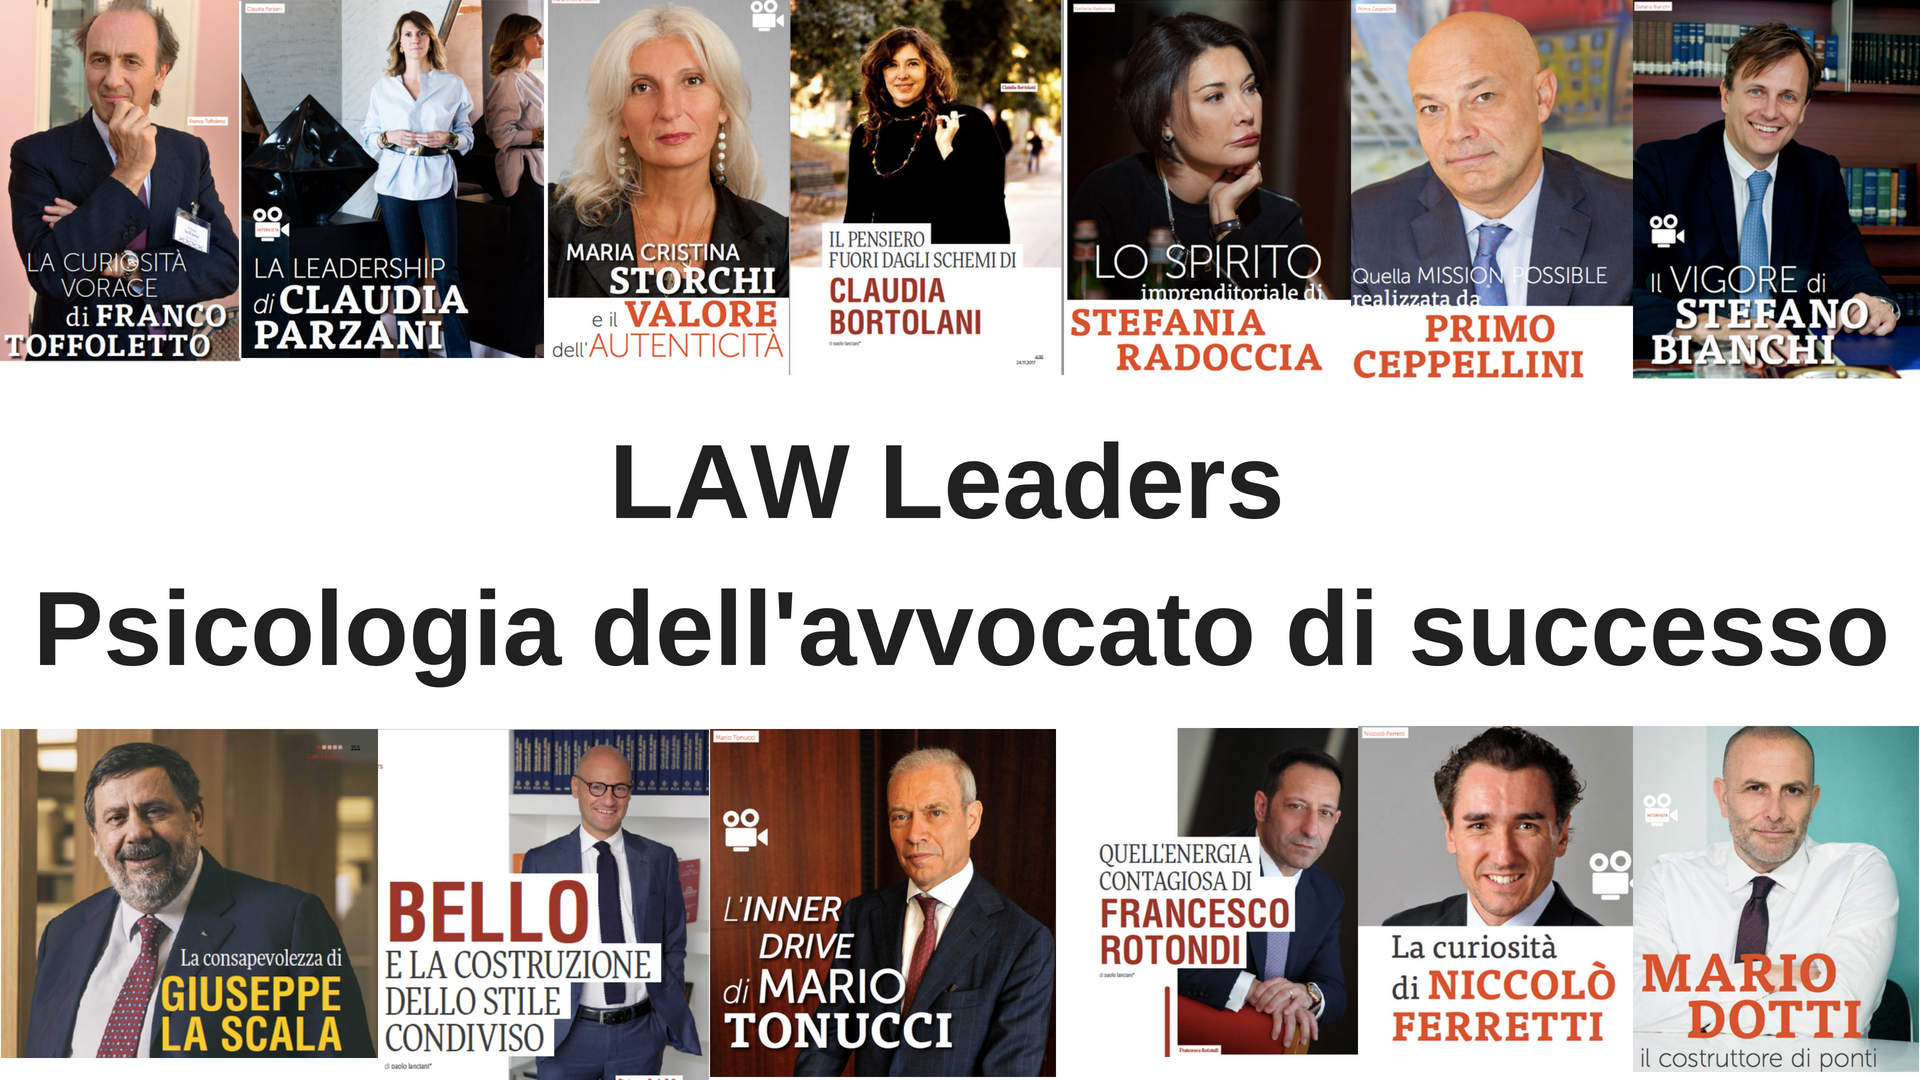 Law Leaders - psicologia dell'avvocato di successo